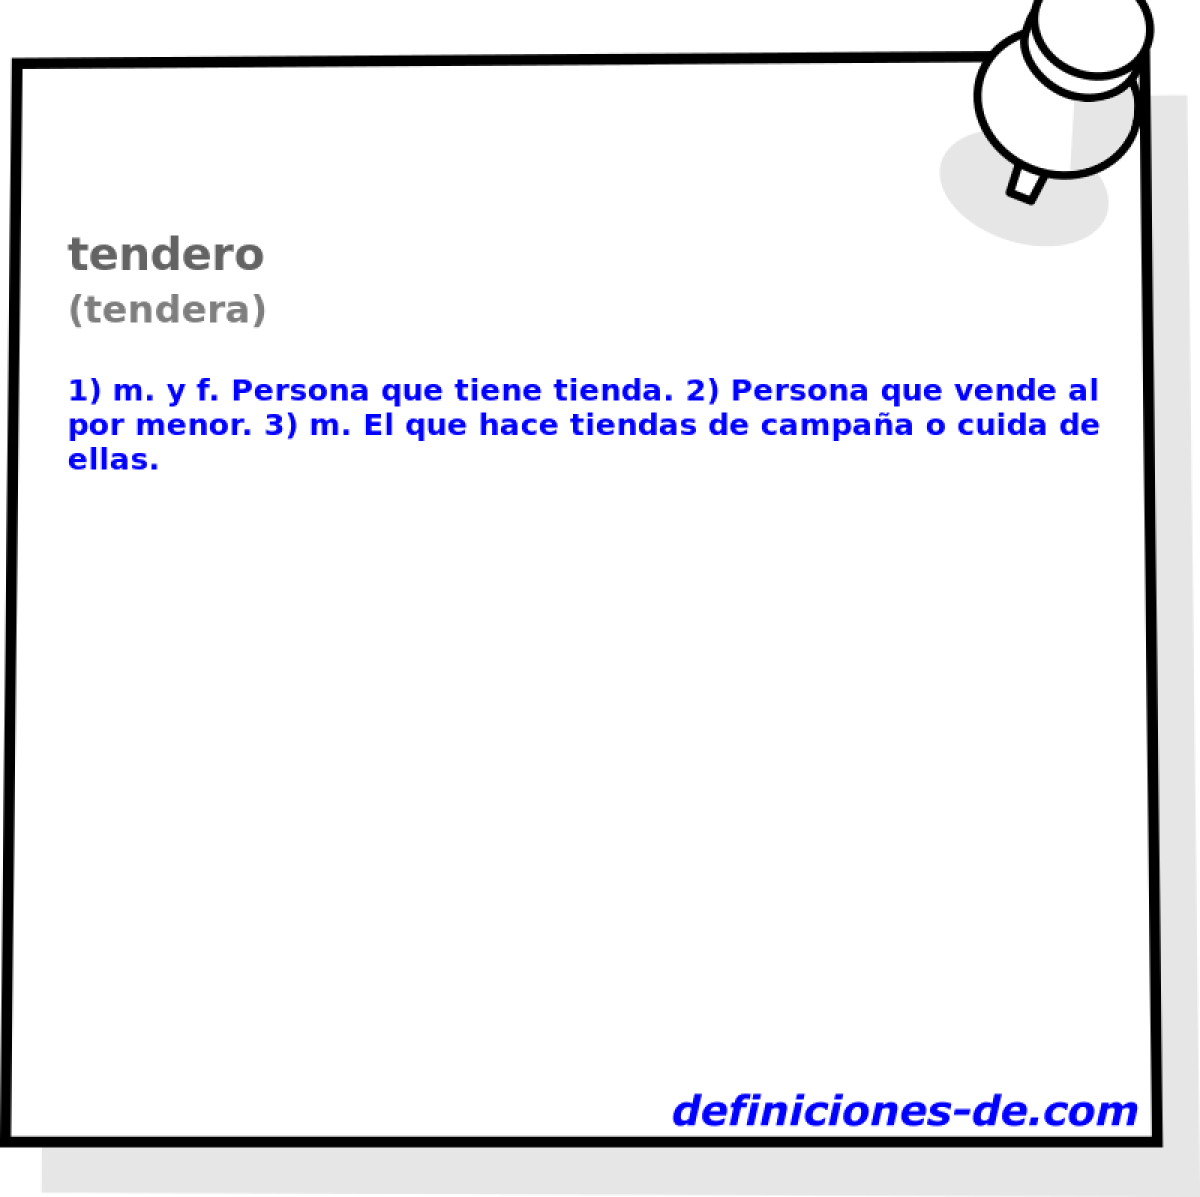 tendero (tendera)